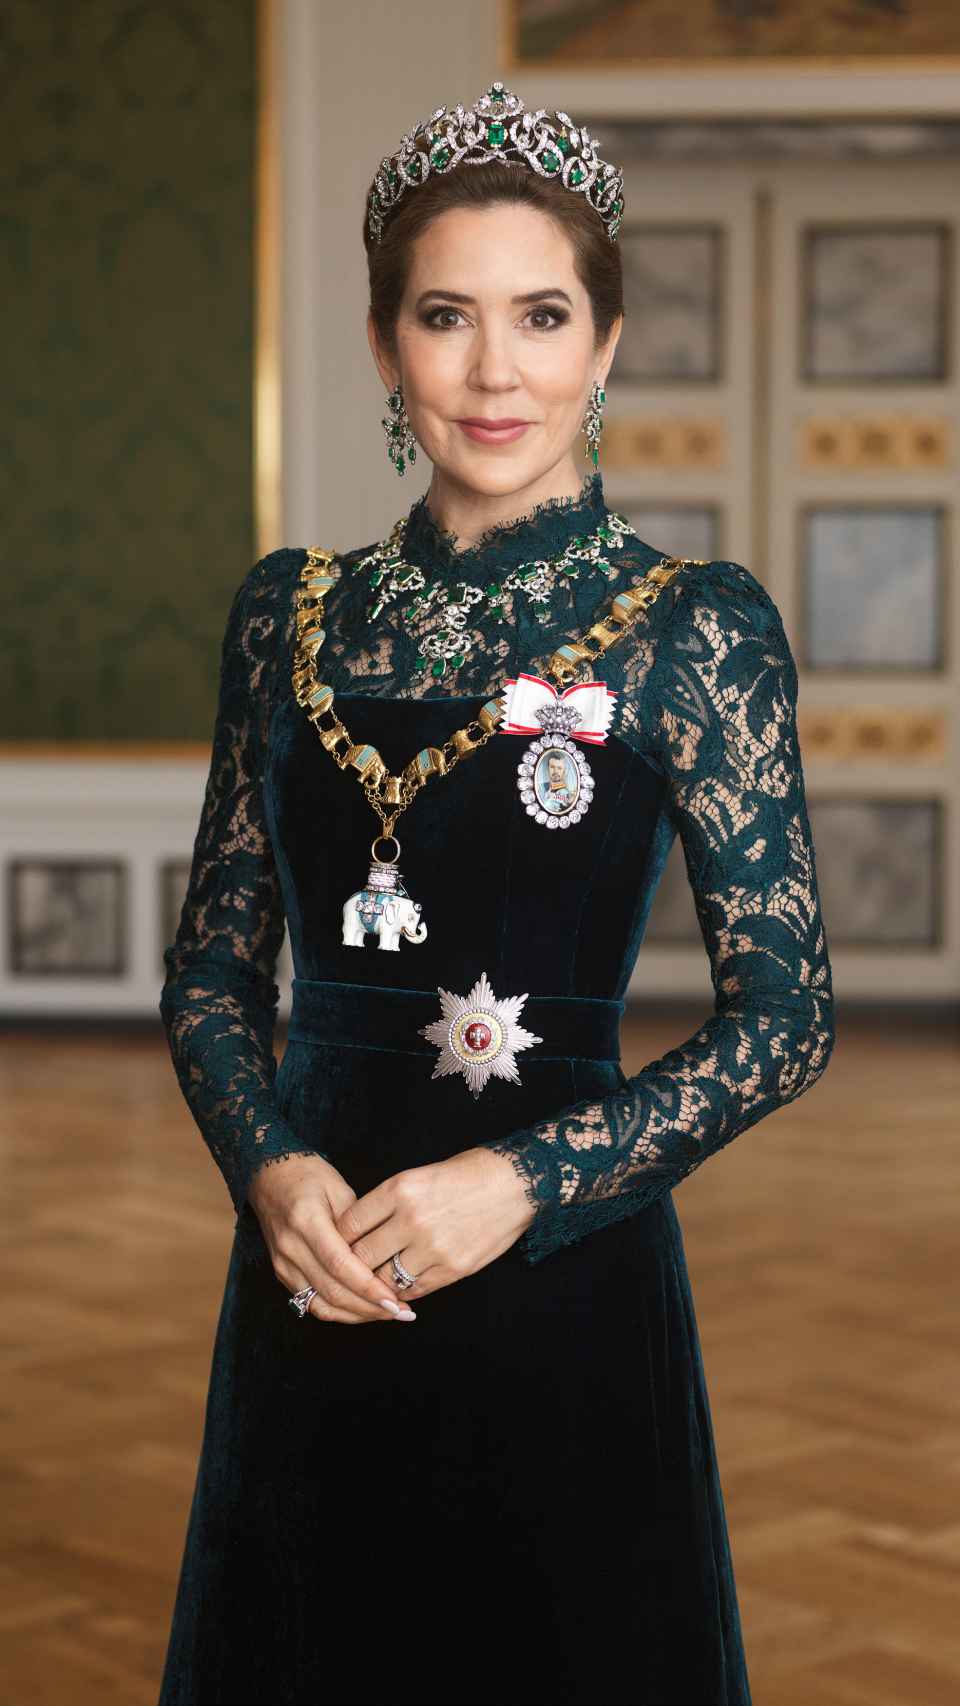 Mary de Dinamarca, en el retrato oficial publicado este 25 de abril.